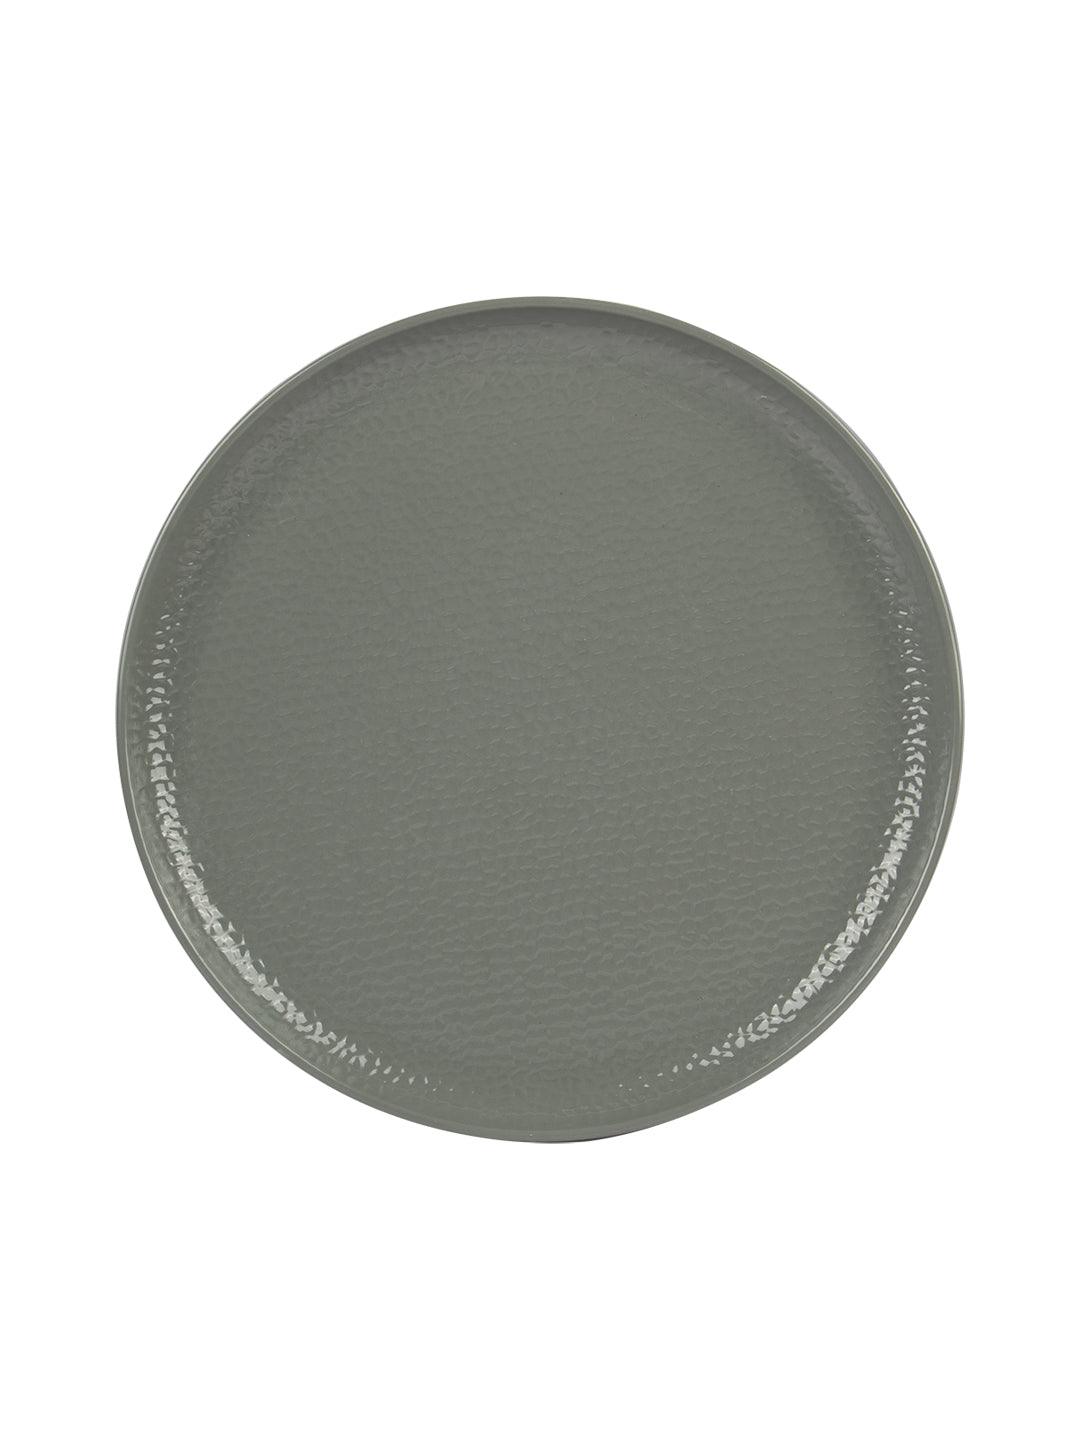 VON CASA Melamine Round Full Plate - Set of 6, Grey